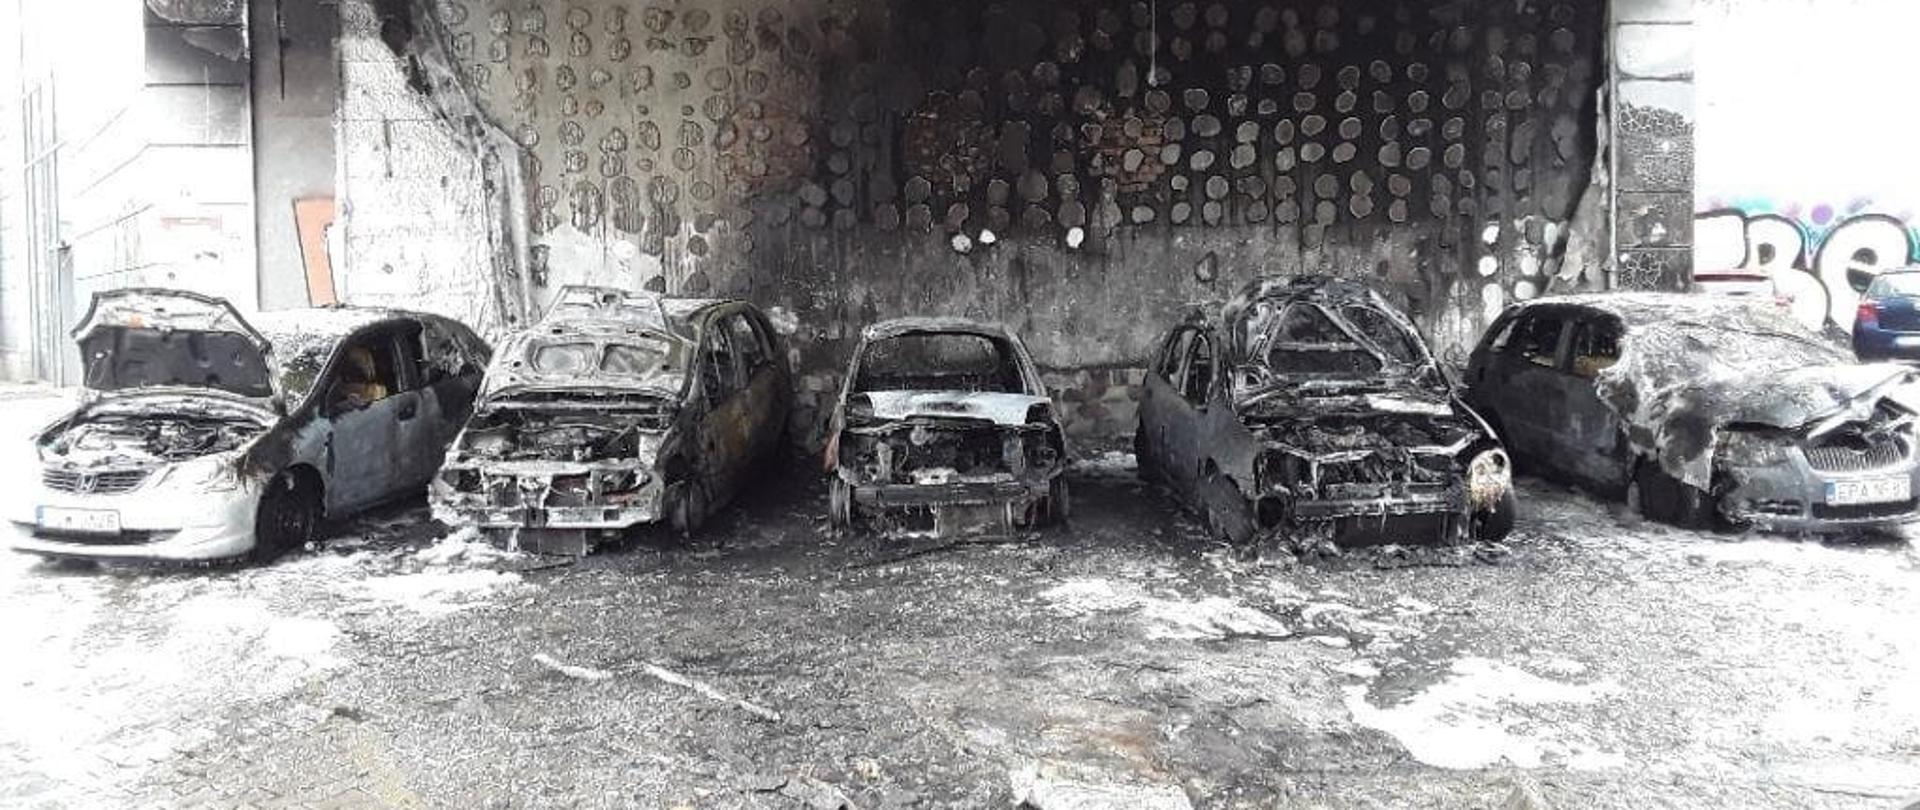 Pięć spalonych samochodów osobowych zaparkowanych obok siebie.